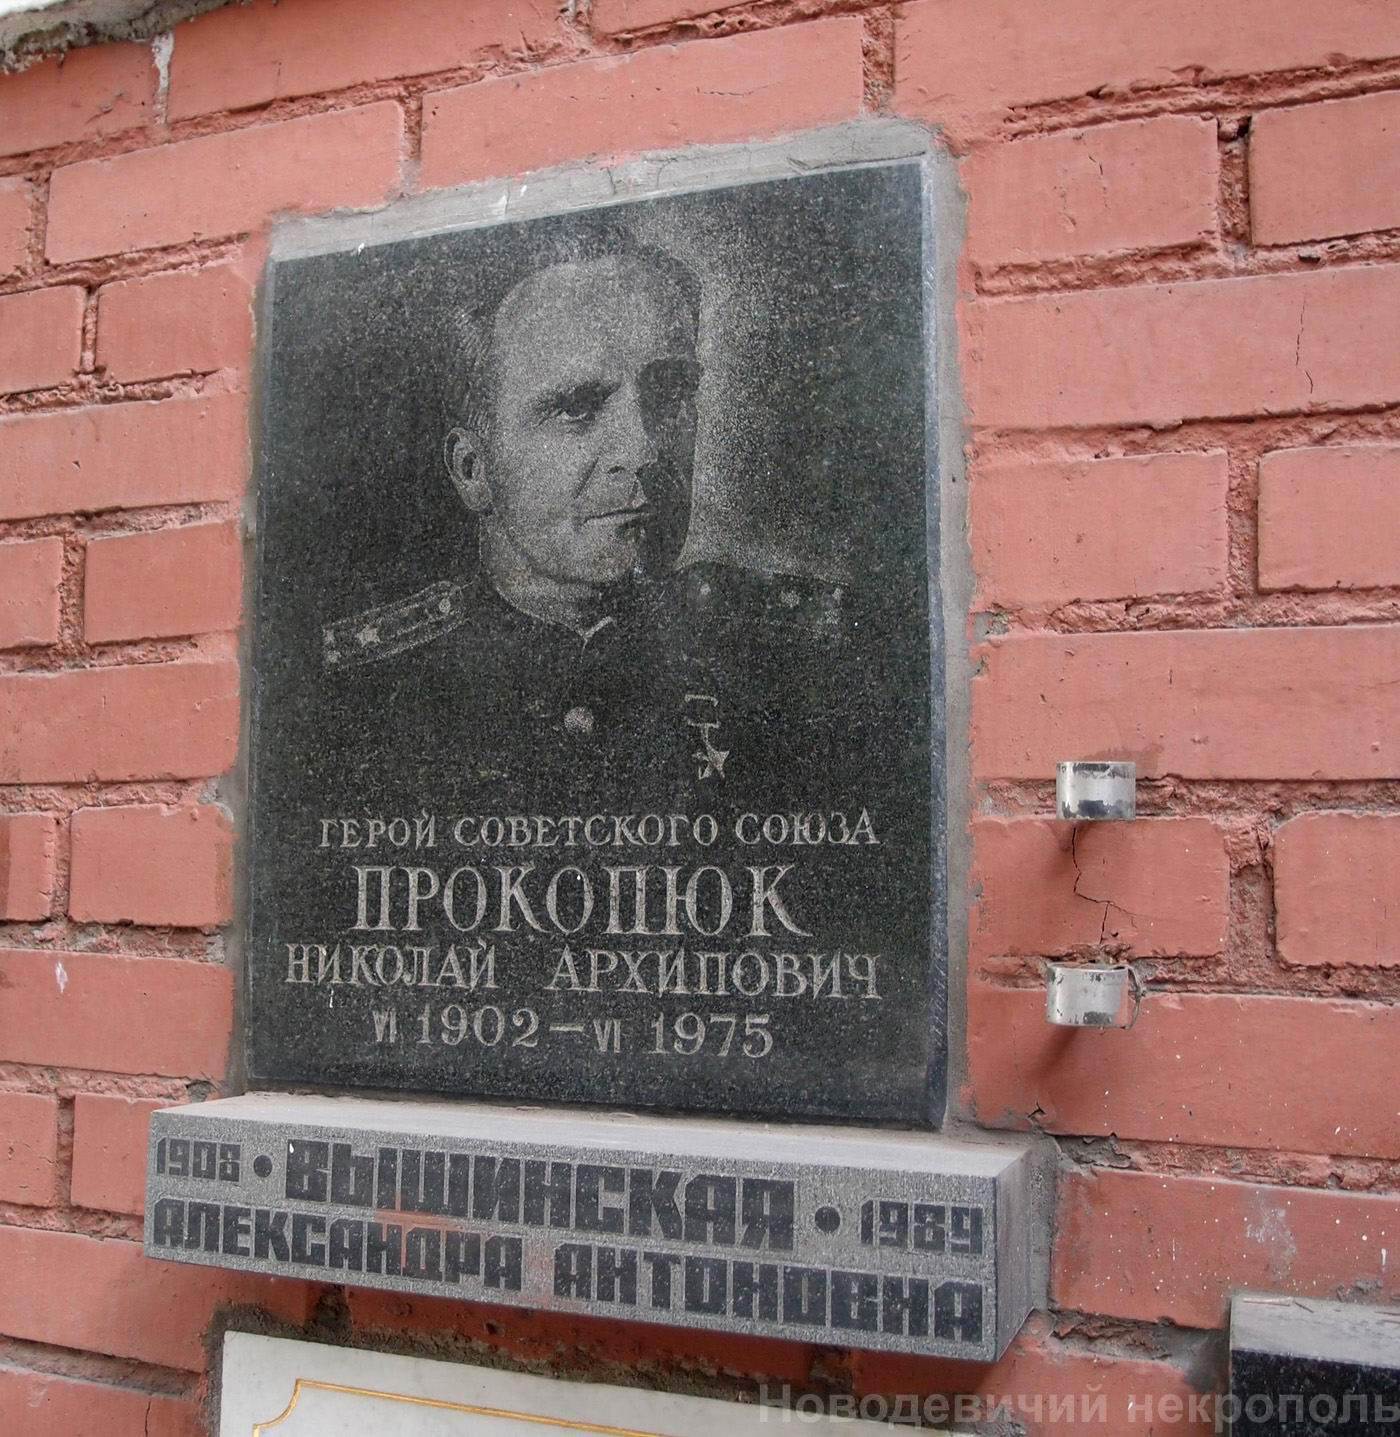 Плита на нише Прокопюка Н.А. (1902–1975), на Новодевичьем кладбище (колумбарий [130]–32–1).